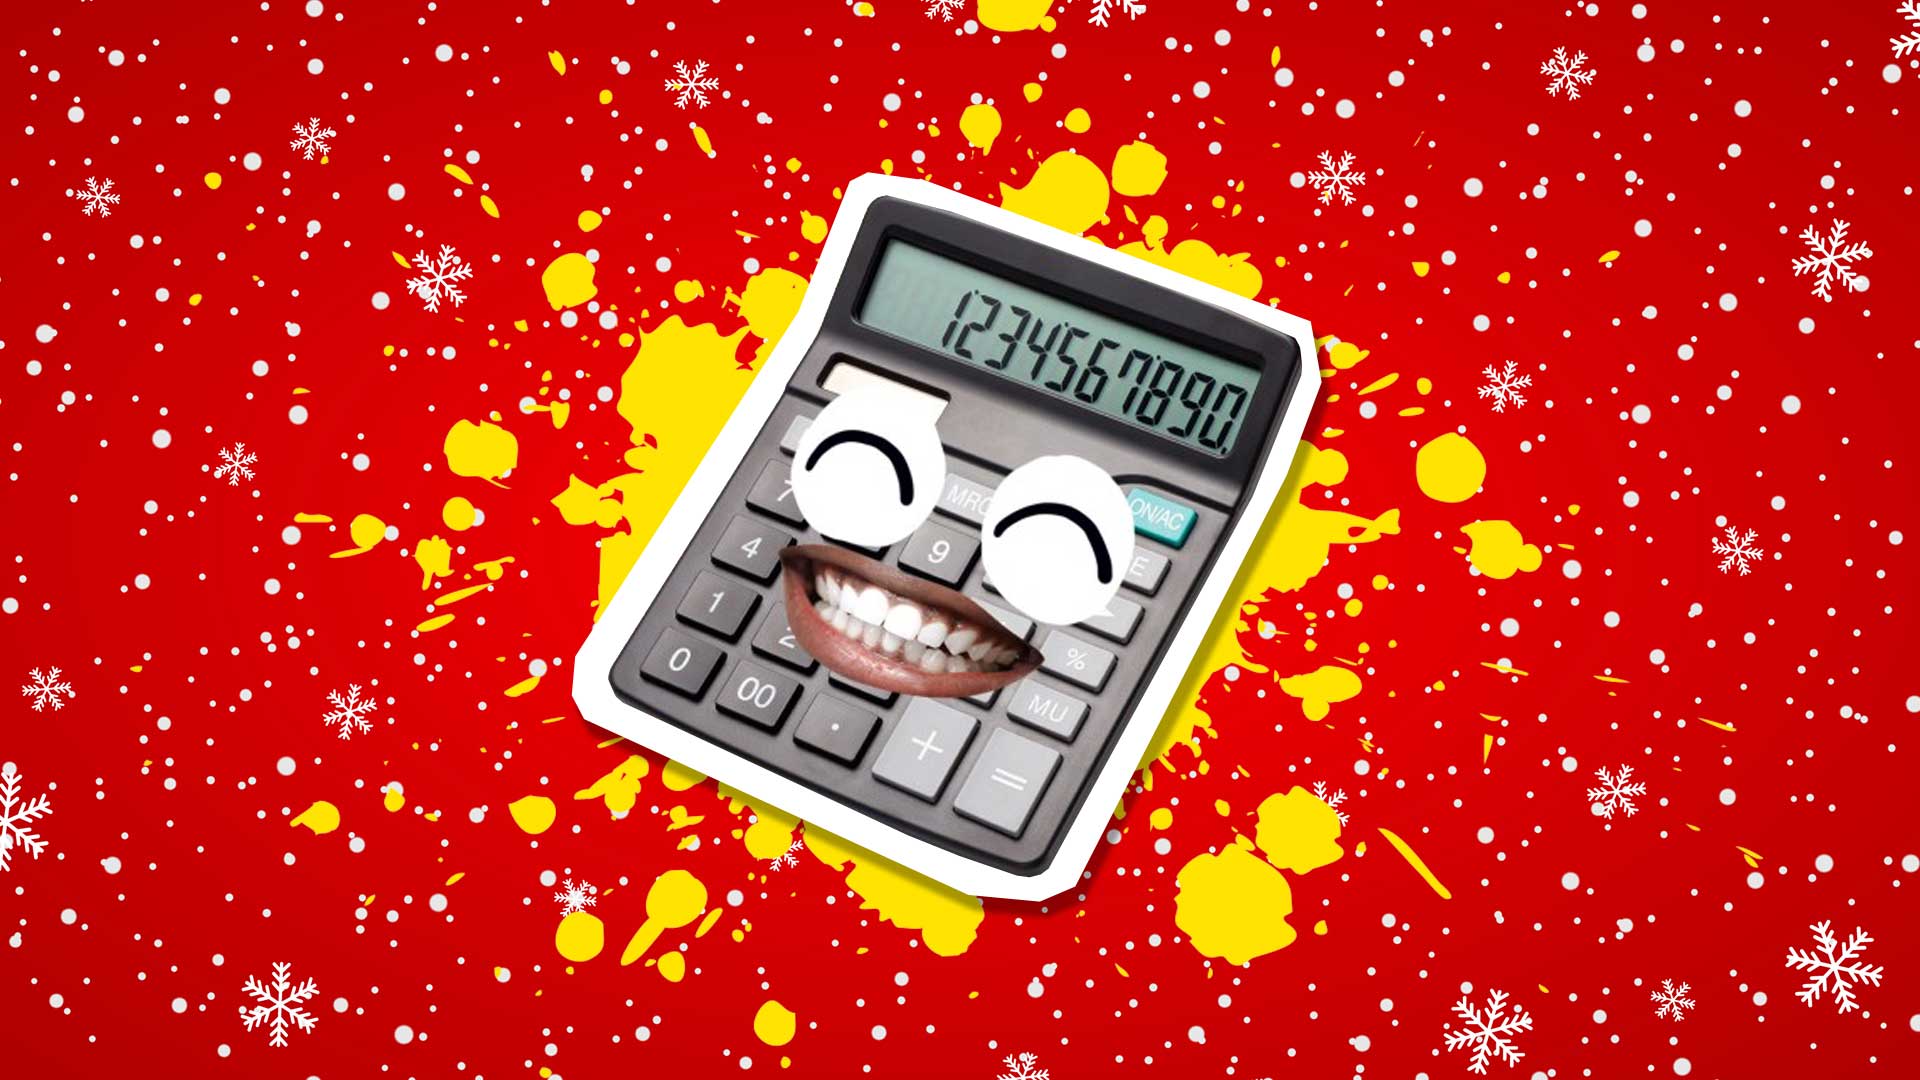 A festive calculator